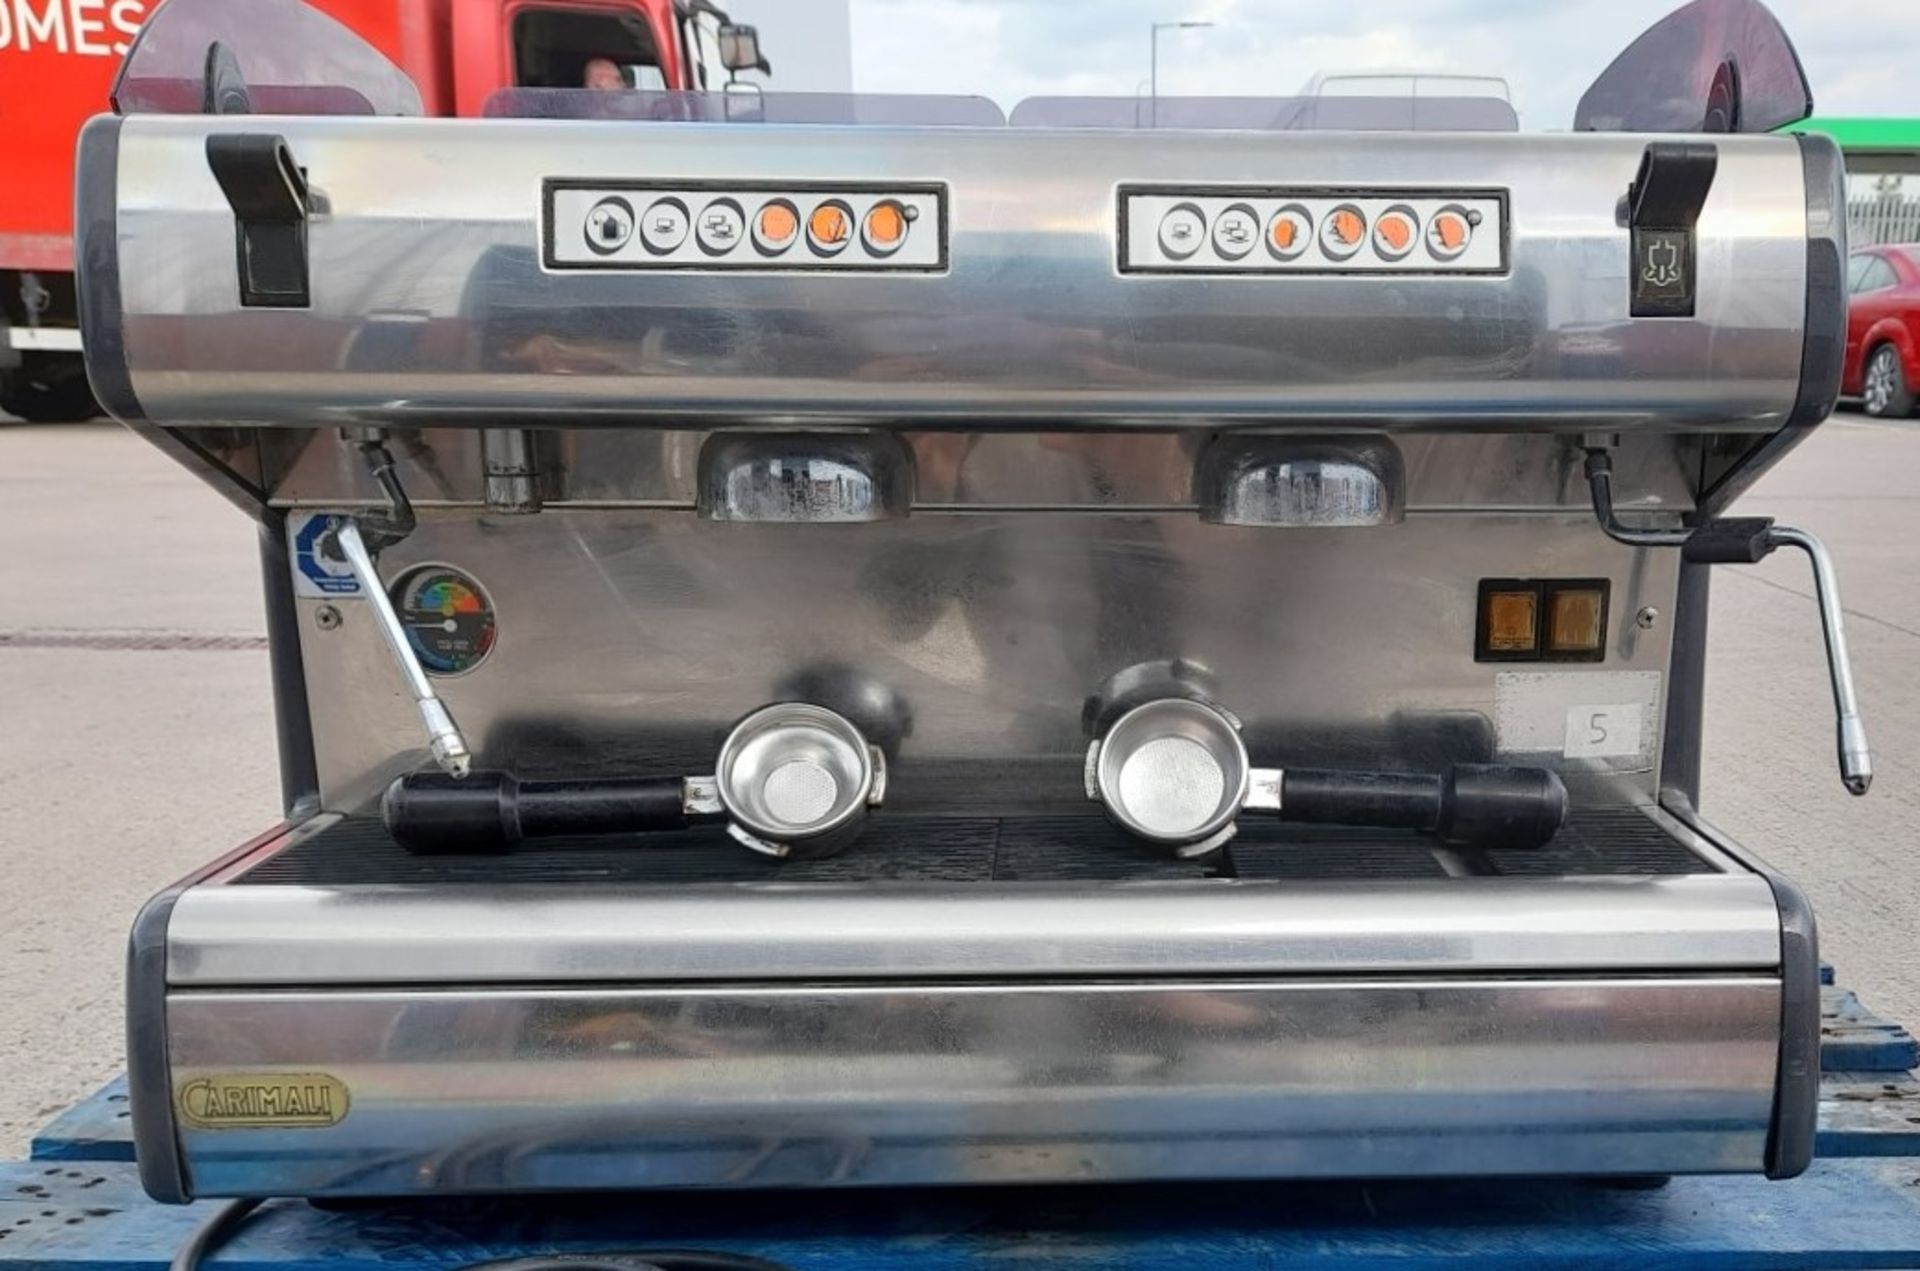 1 x Carimali Commercial Espresso Coffee Machine - CL011 - Location: Altrincham WA14 - Image 4 of 9